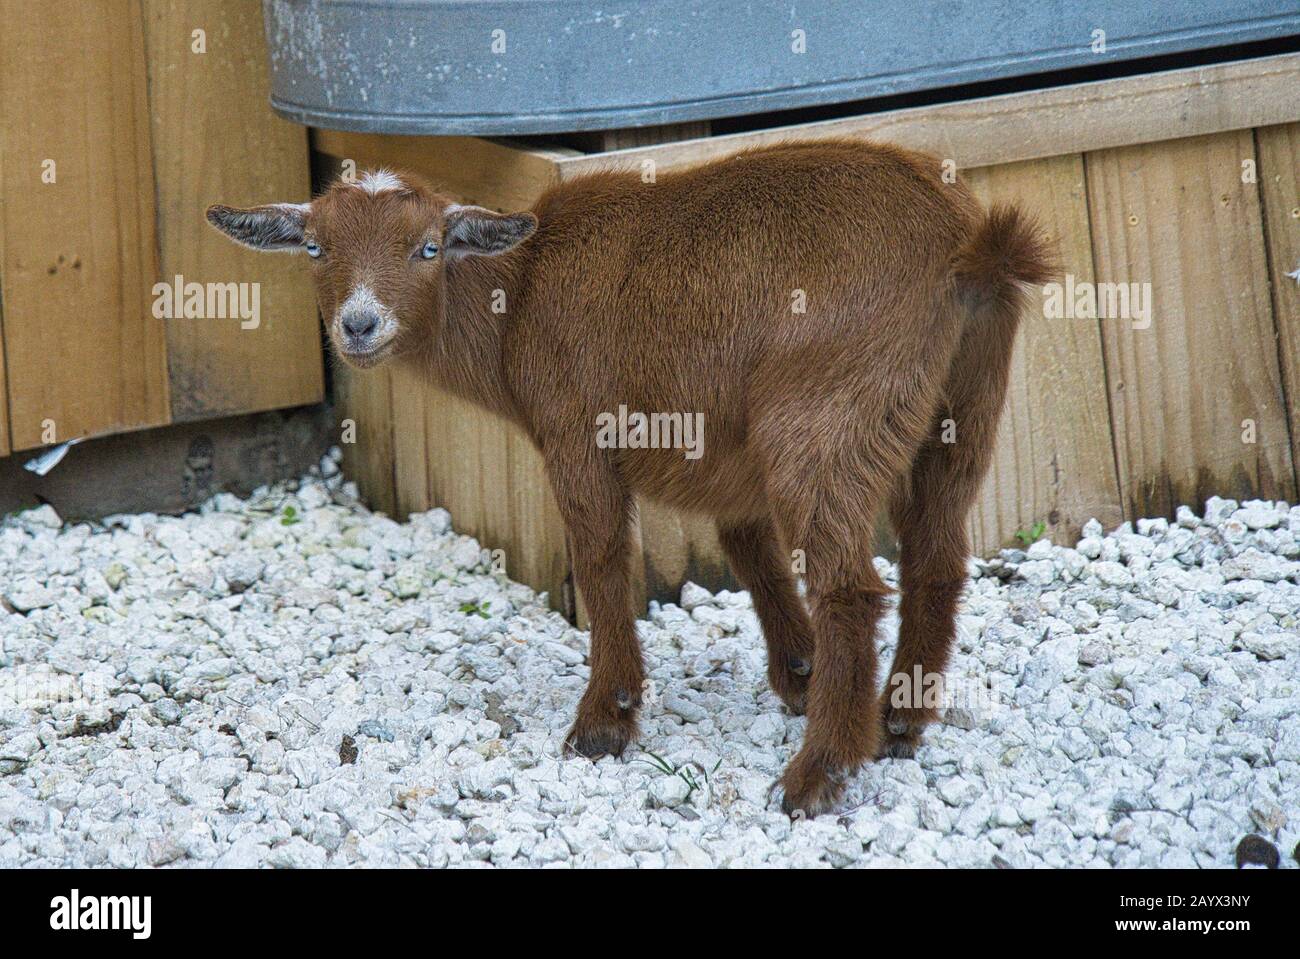 Cabra bebé cabra marrón con ojos de color azul hielo Foto de stock